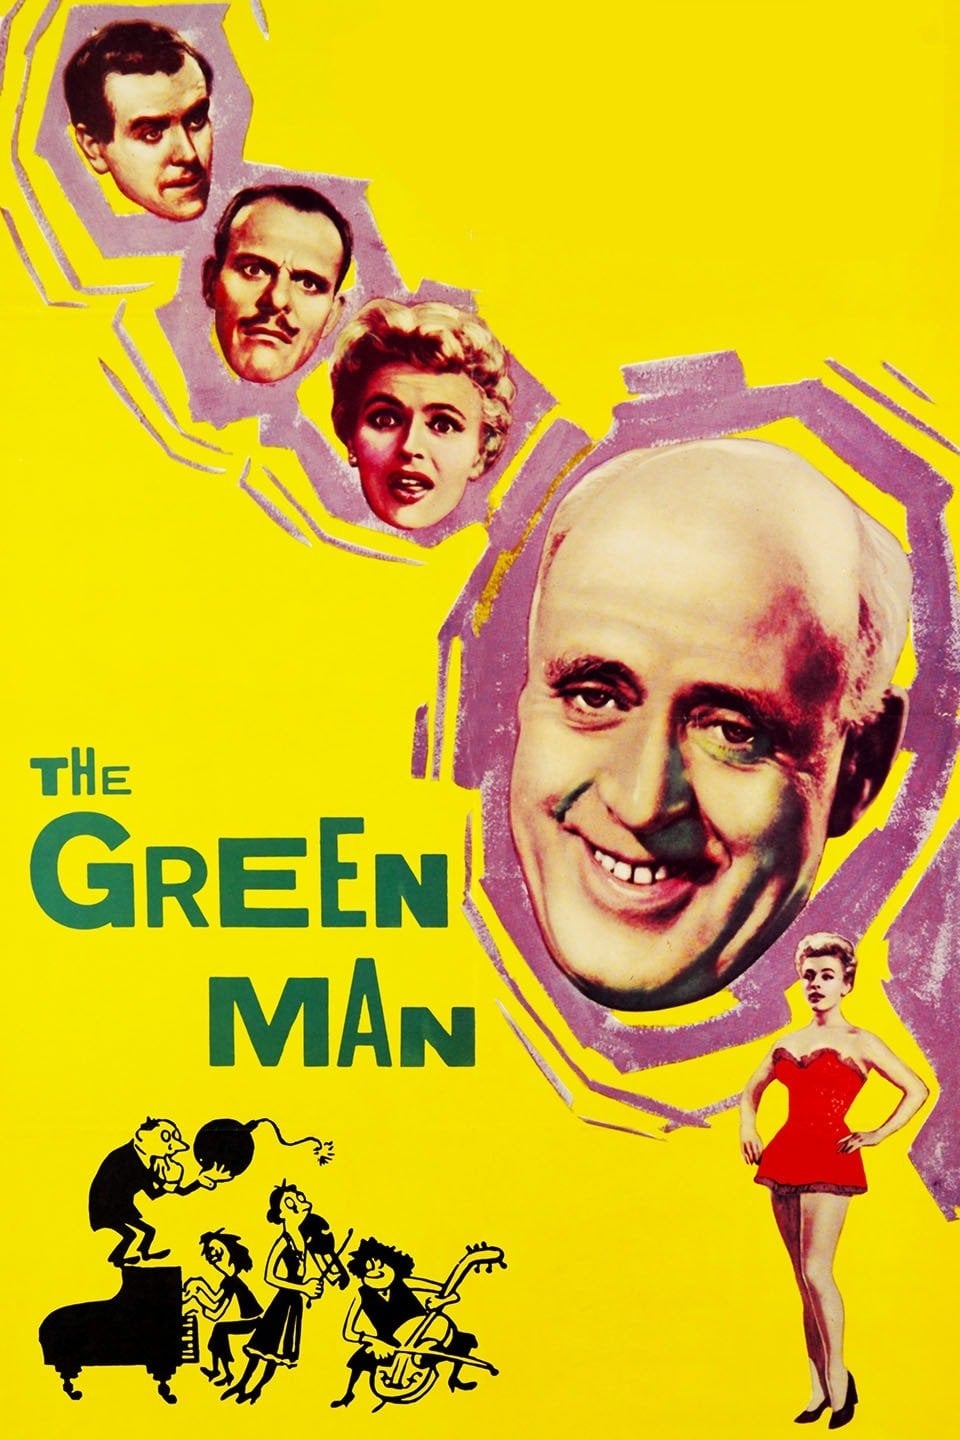 Der grüne Mann